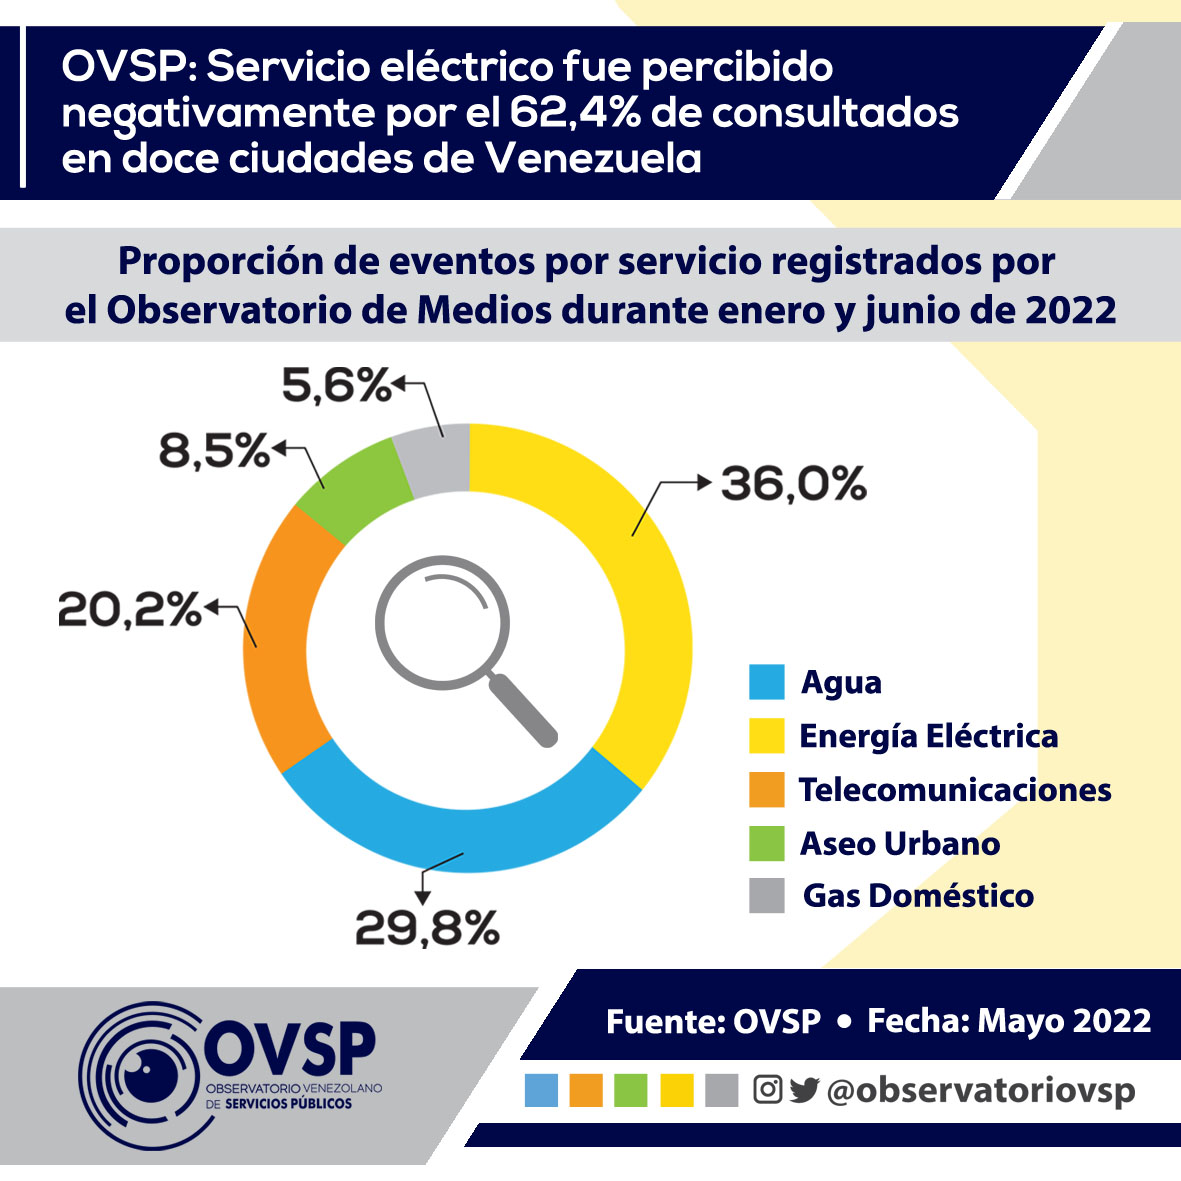 OVSP - Servicio eléctrico